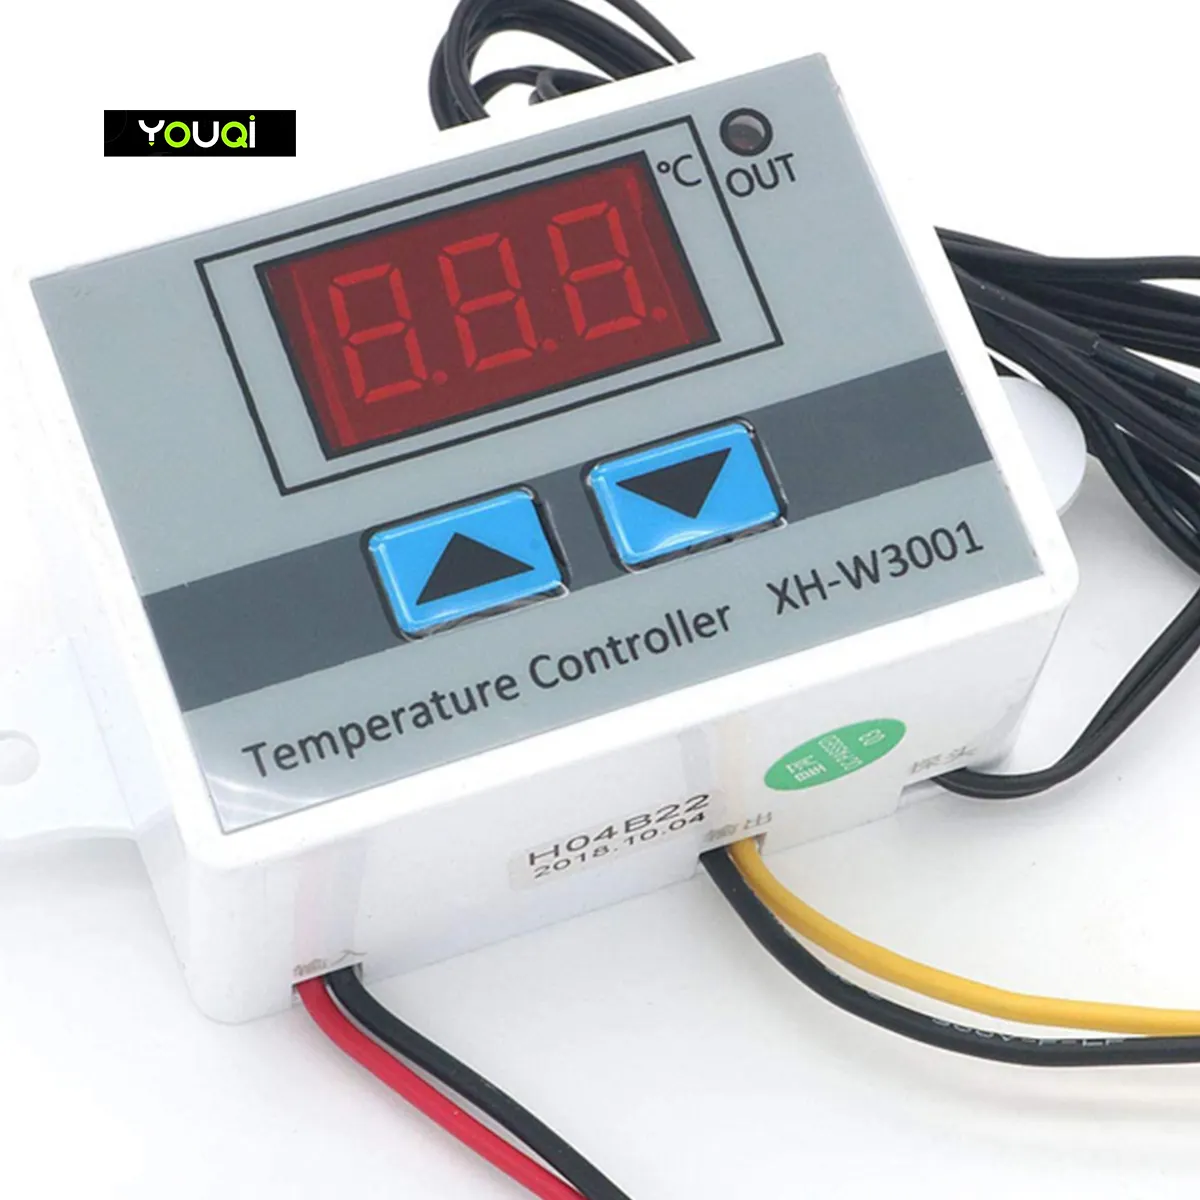 YouQi venda Quente Incubadora de Refrigeração Interruptor De Aquecimento Termostato NTC Sensor De Temperatura Controlador XH-W3001